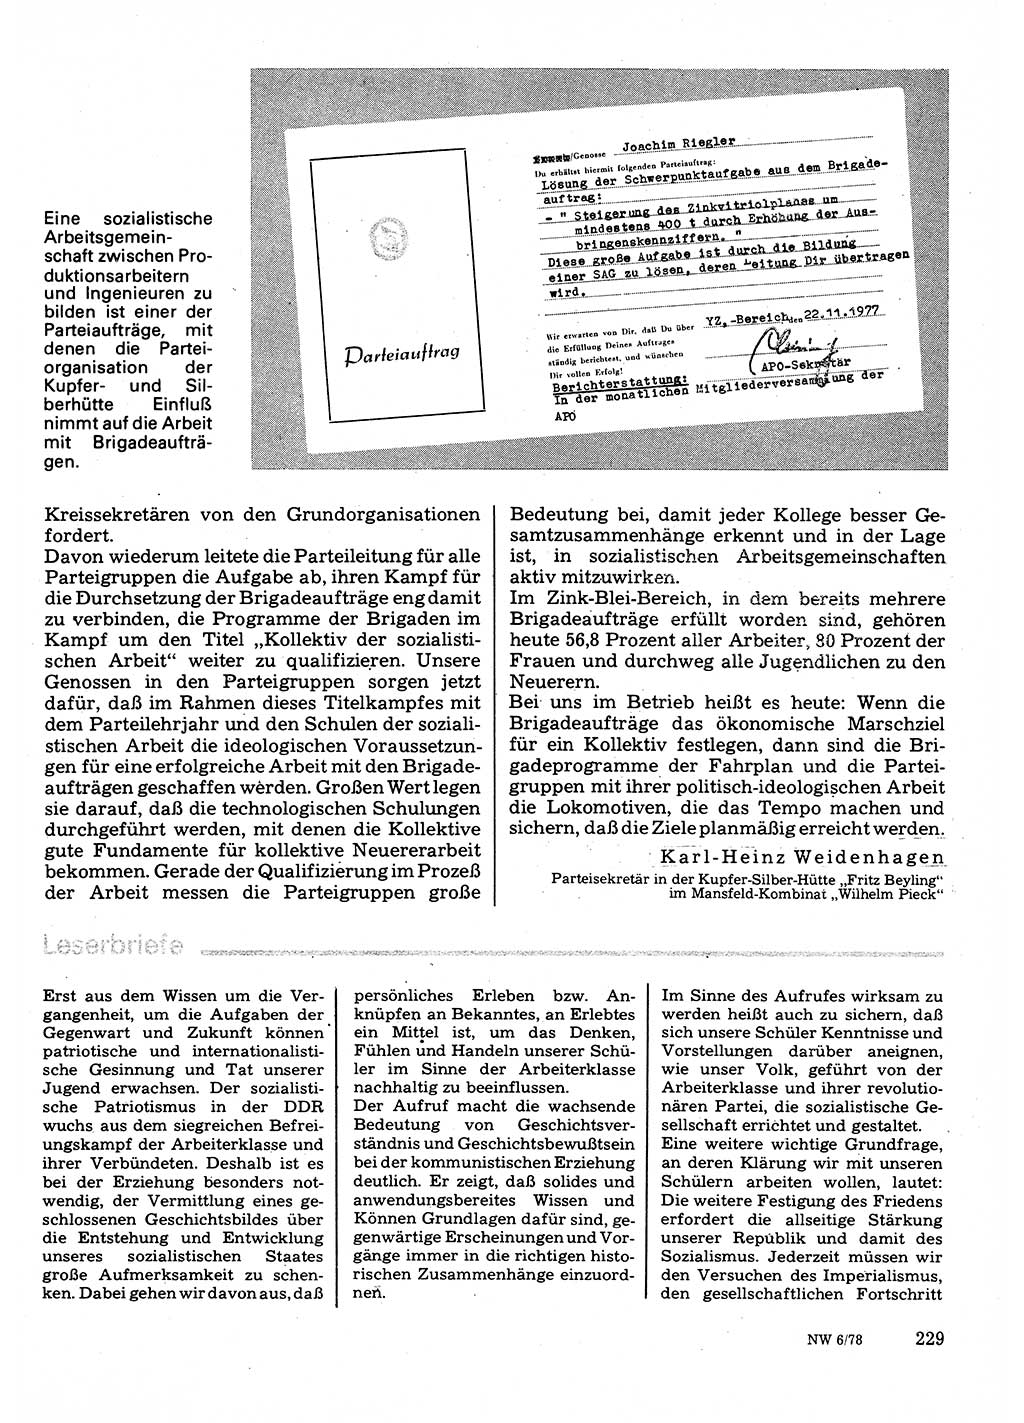 Neuer Weg (NW), Organ des Zentralkomitees (ZK) der SED (Sozialistische Einheitspartei Deutschlands) für Fragen des Parteilebens, 33. Jahrgang [Deutsche Demokratische Republik (DDR)] 1978, Seite 229 (NW ZK SED DDR 1978, S. 229)